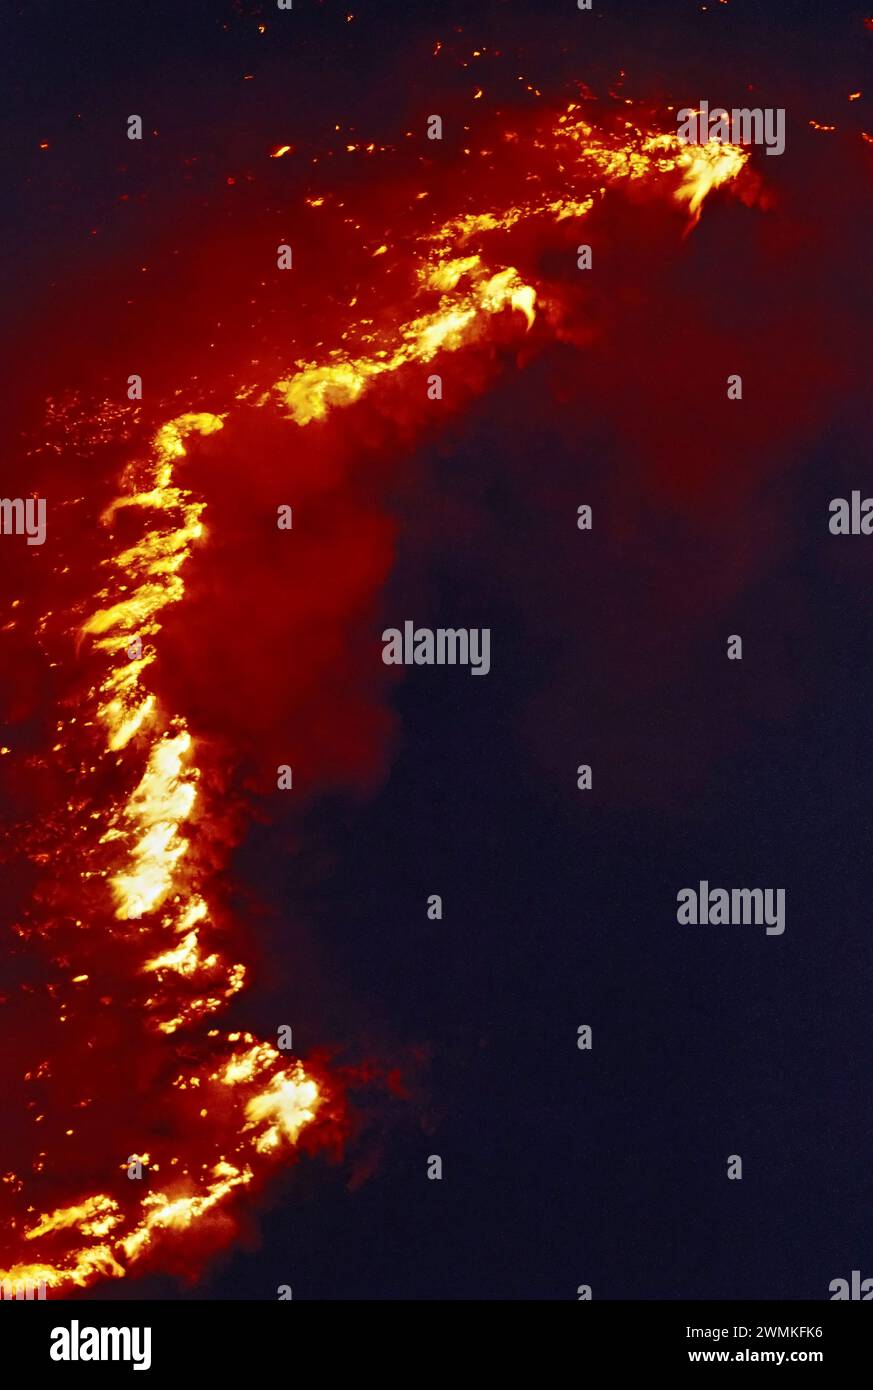 Die Flammen springen hoch, während sich ein durch Blitze verursachtes Waldfeuer entlang einer Bergrücke in die Nacht ausbreitet. Wilde Landbrände Kosten Millionen von Dollar ... Stockfoto